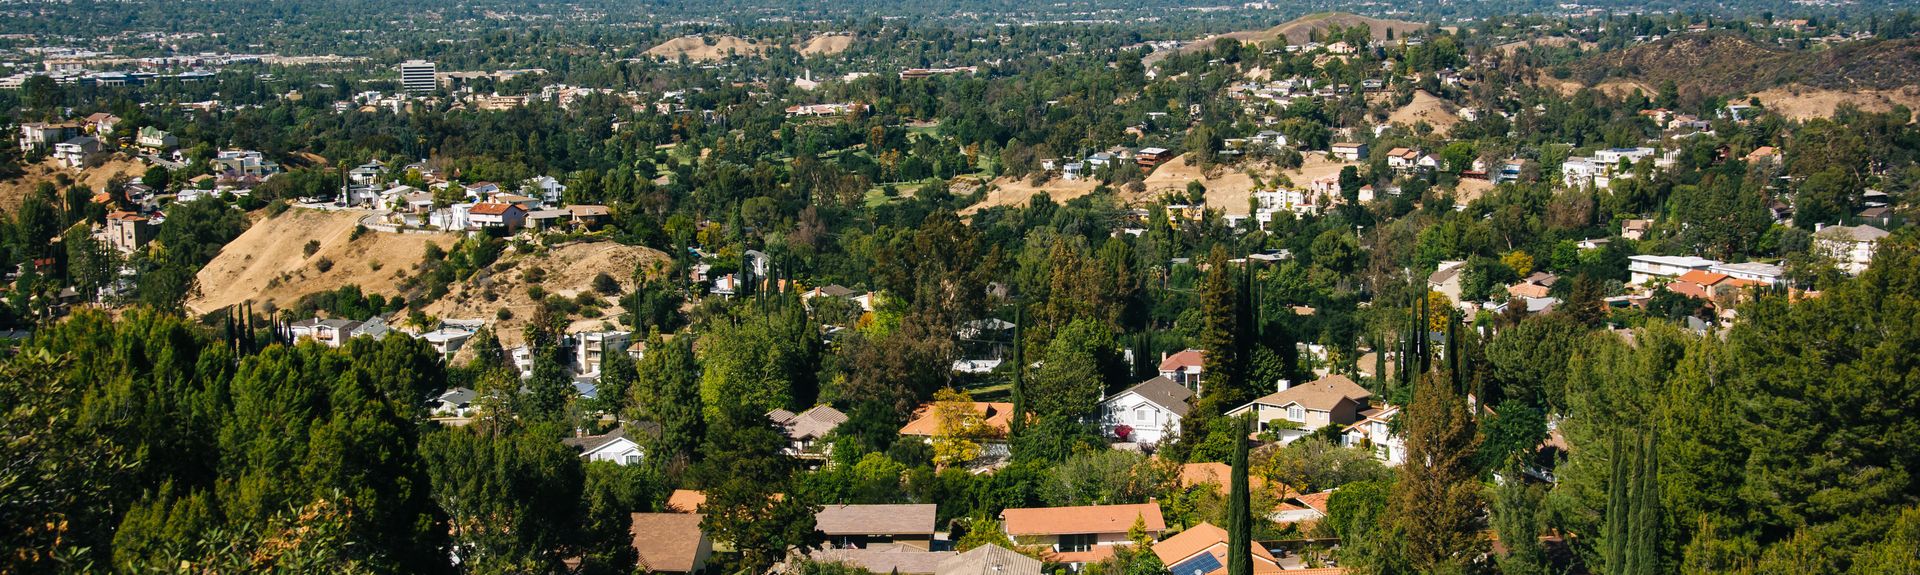 Vrbo San Fernando Valley Us Vacation Rentals House